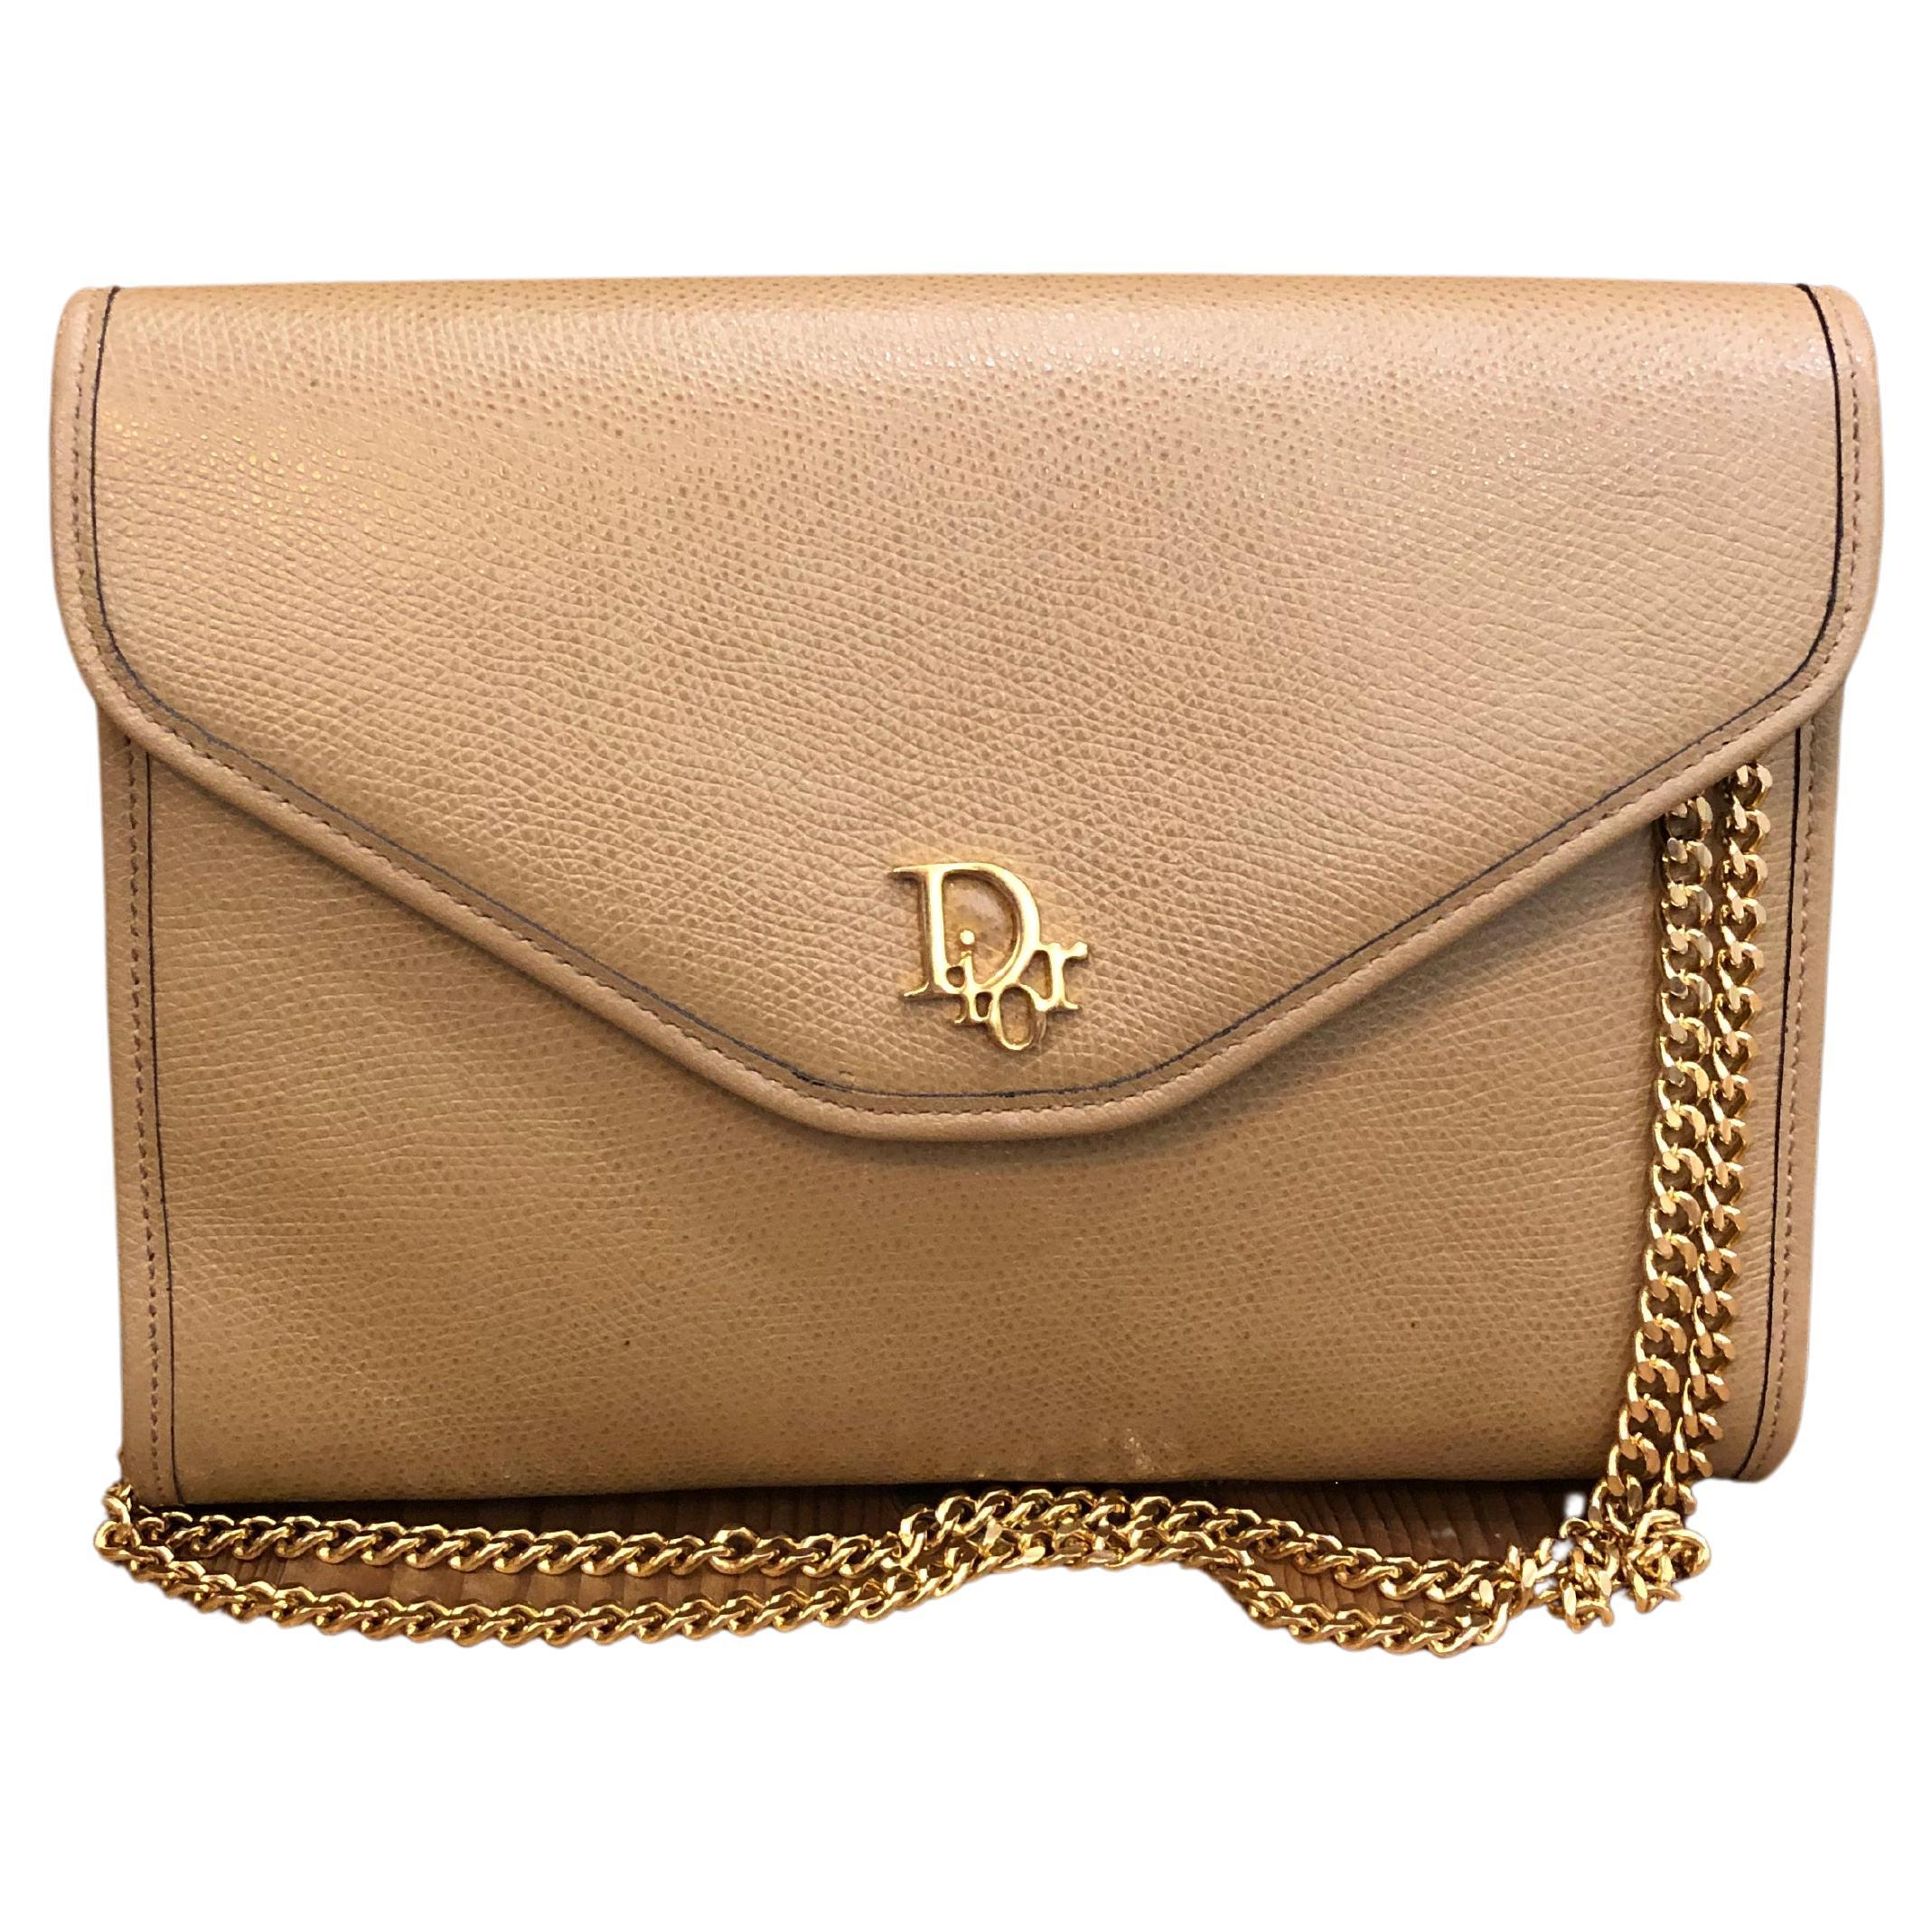 Vintage Christian Dior Beige Leather Chain Shoulder Bag